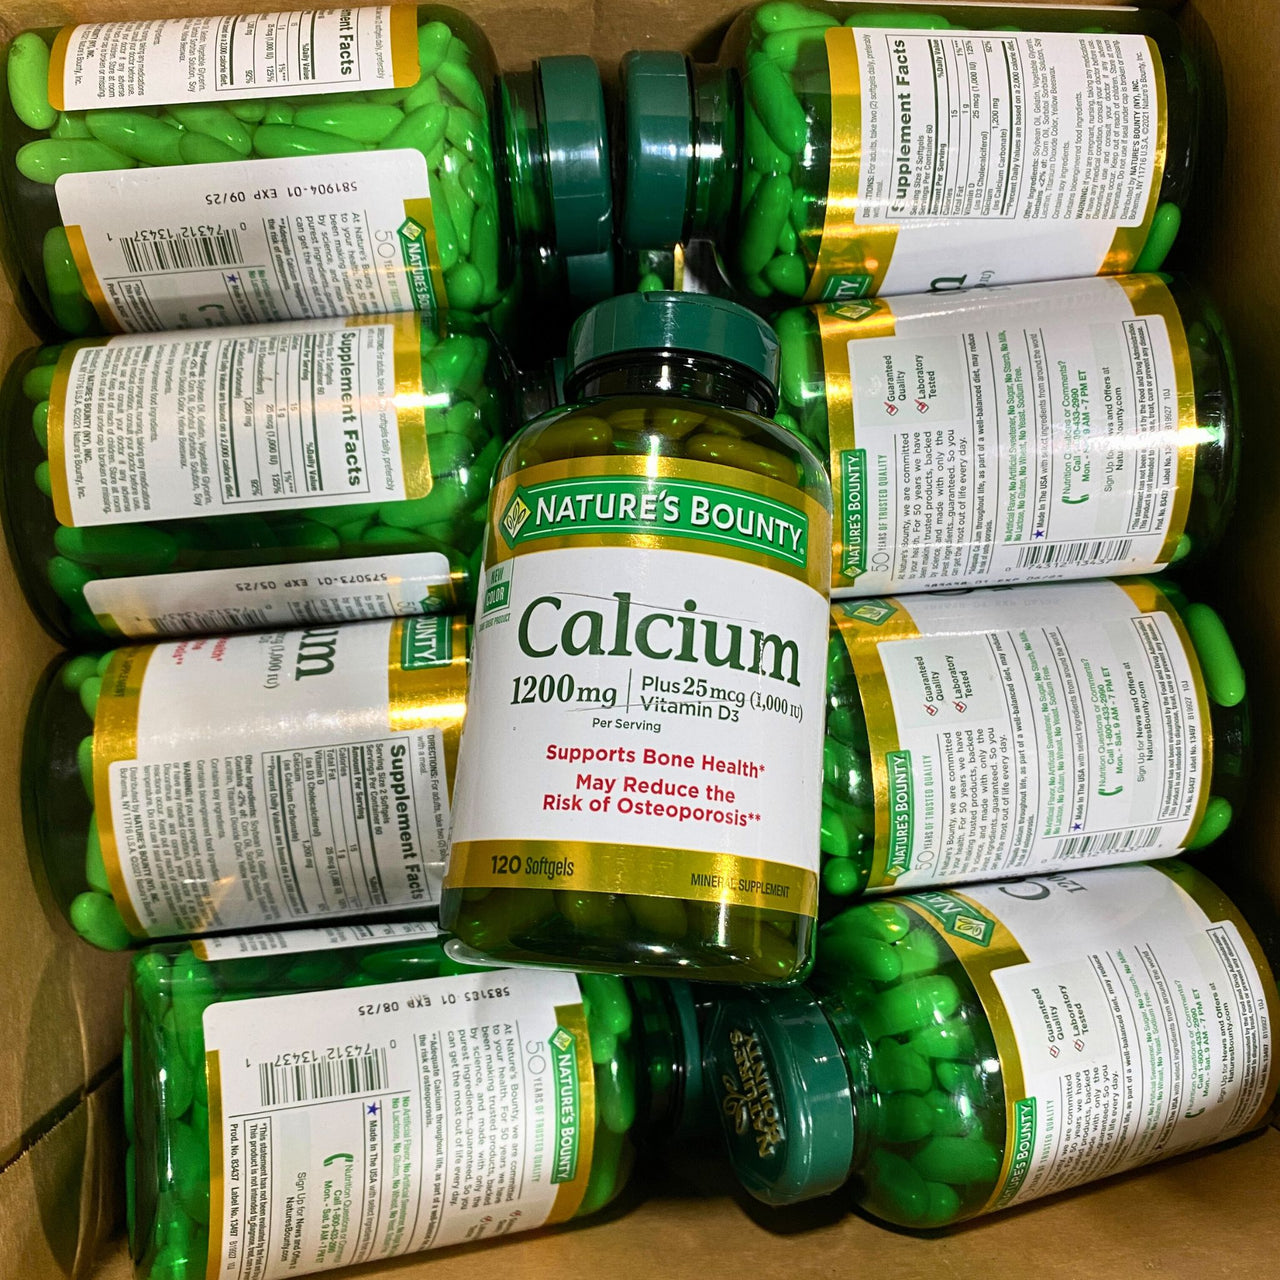 Nature's Bounty Calcium 1200mg | Plus 25mcg (1,000 IU) Vitamin D3